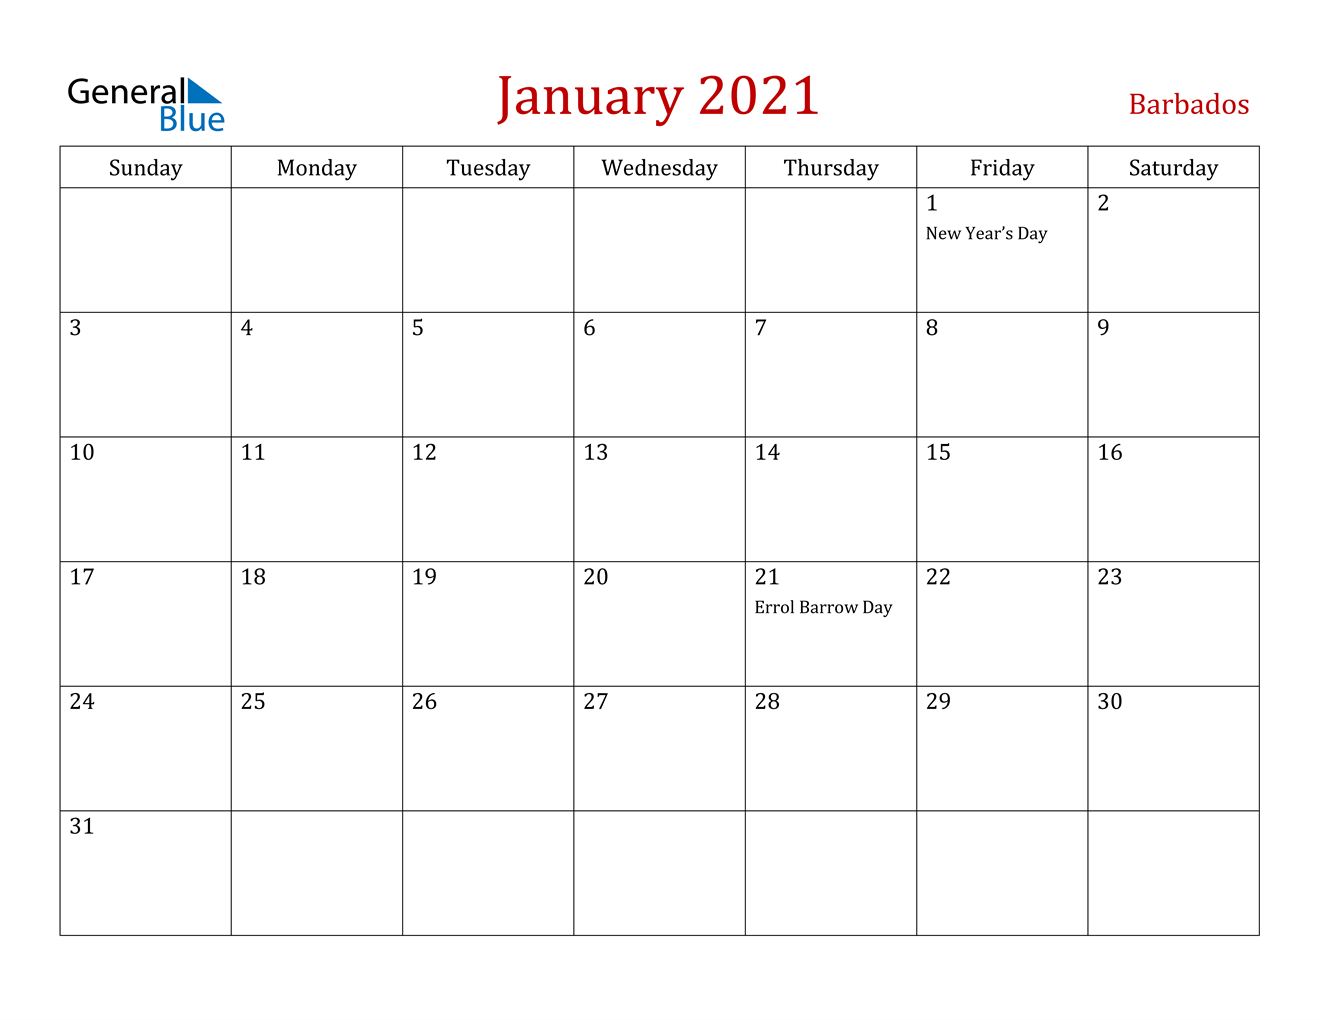 January 2021 Calendar - Barbados